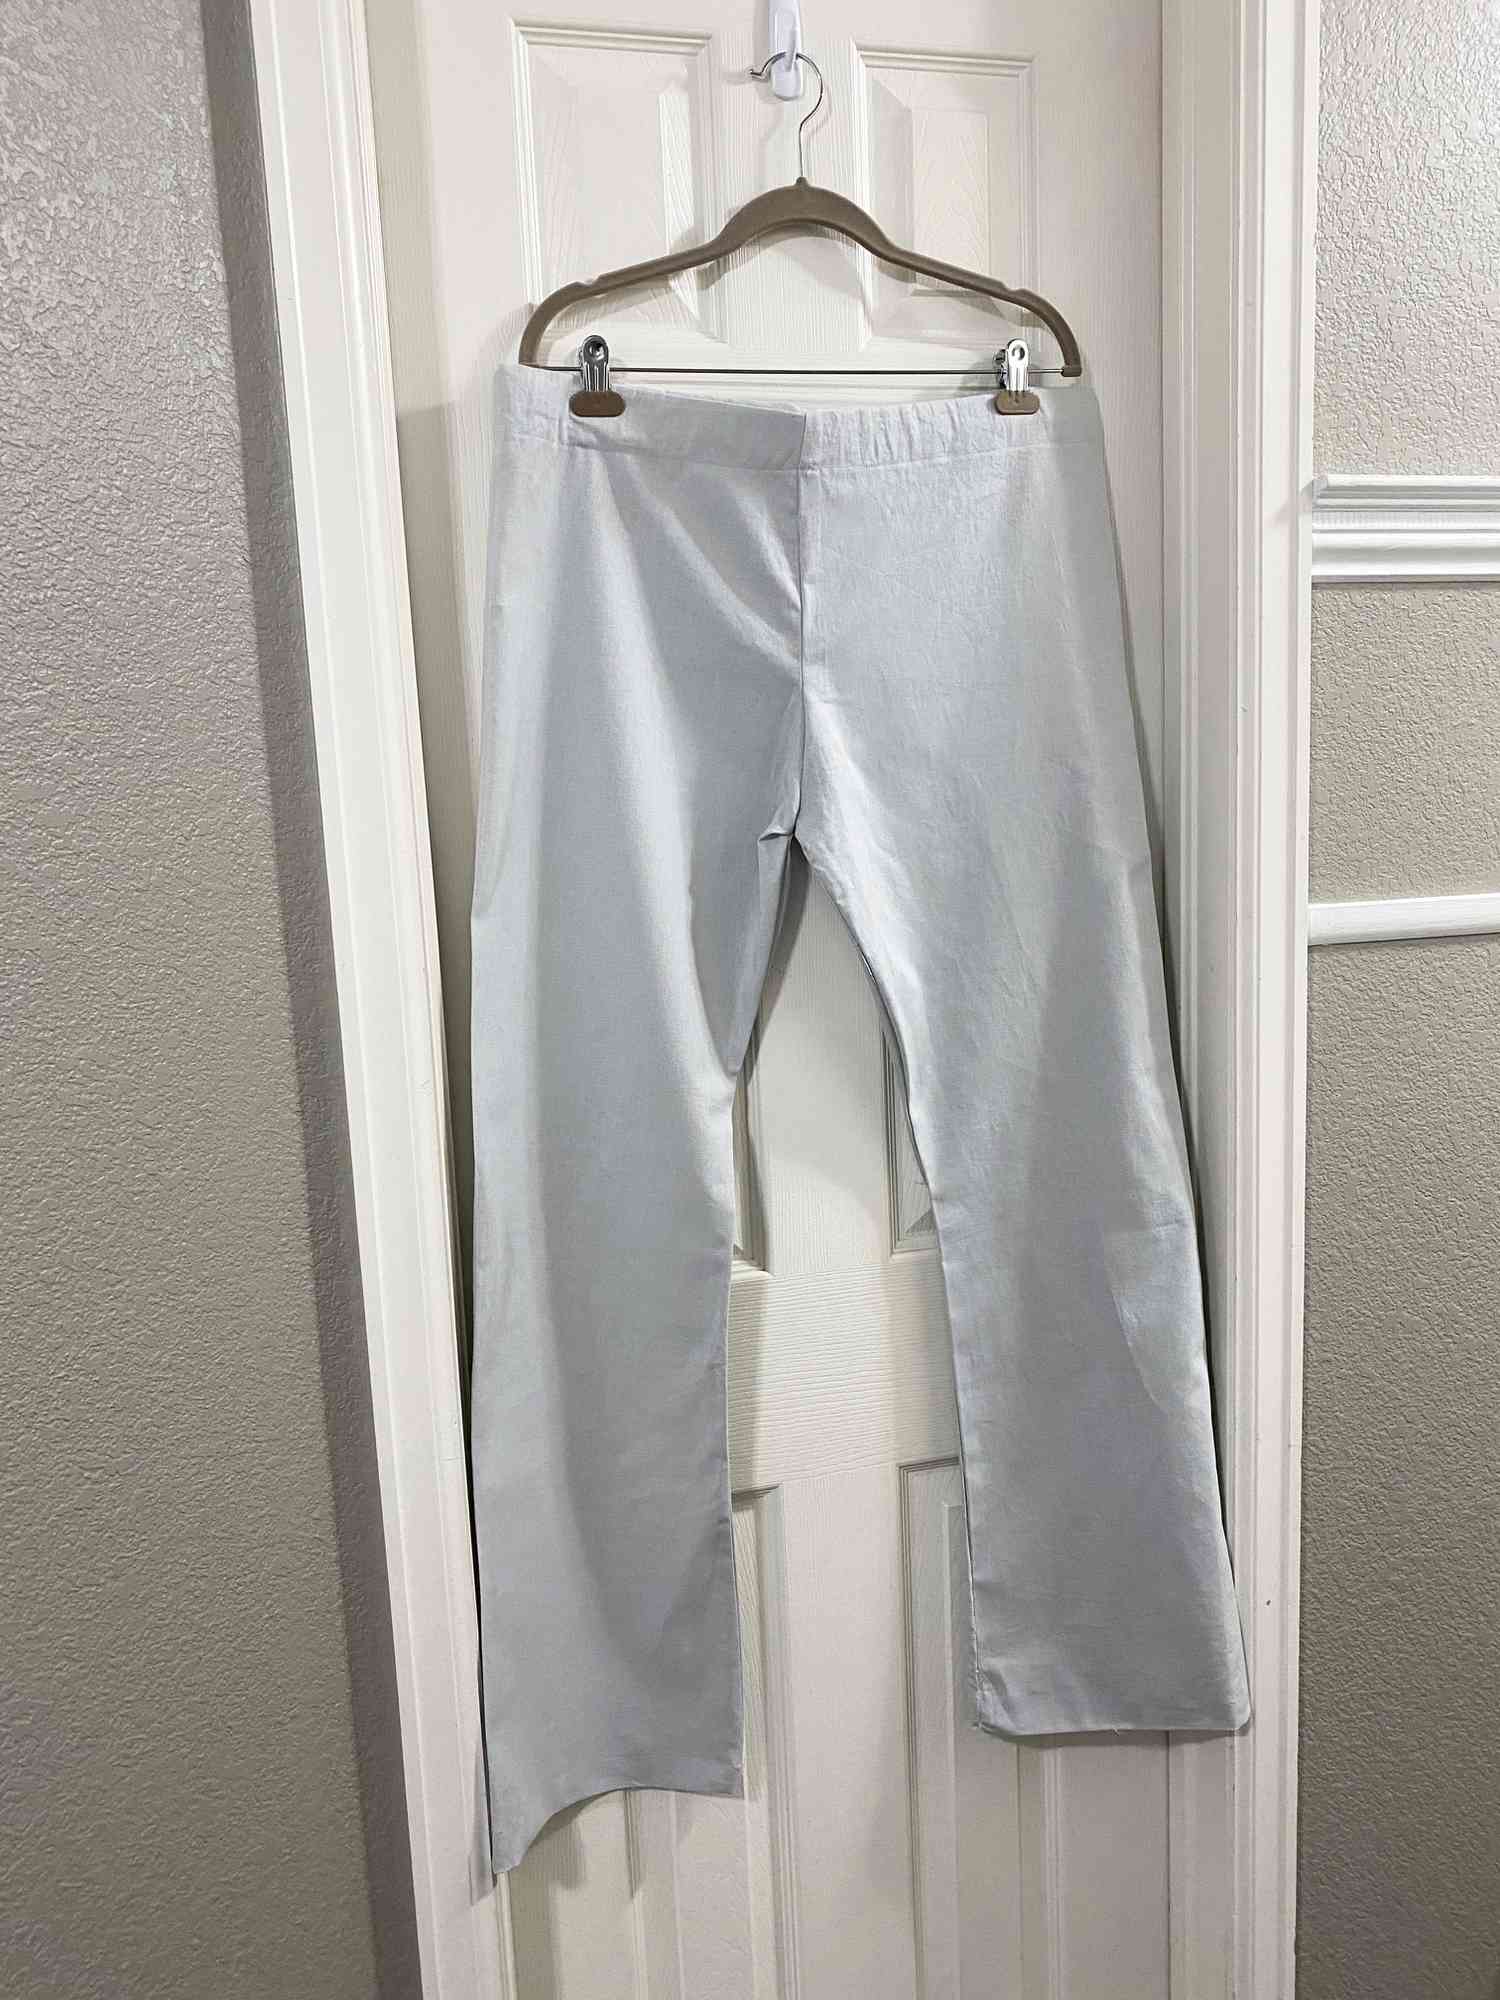 一条裤子挂在一扇门